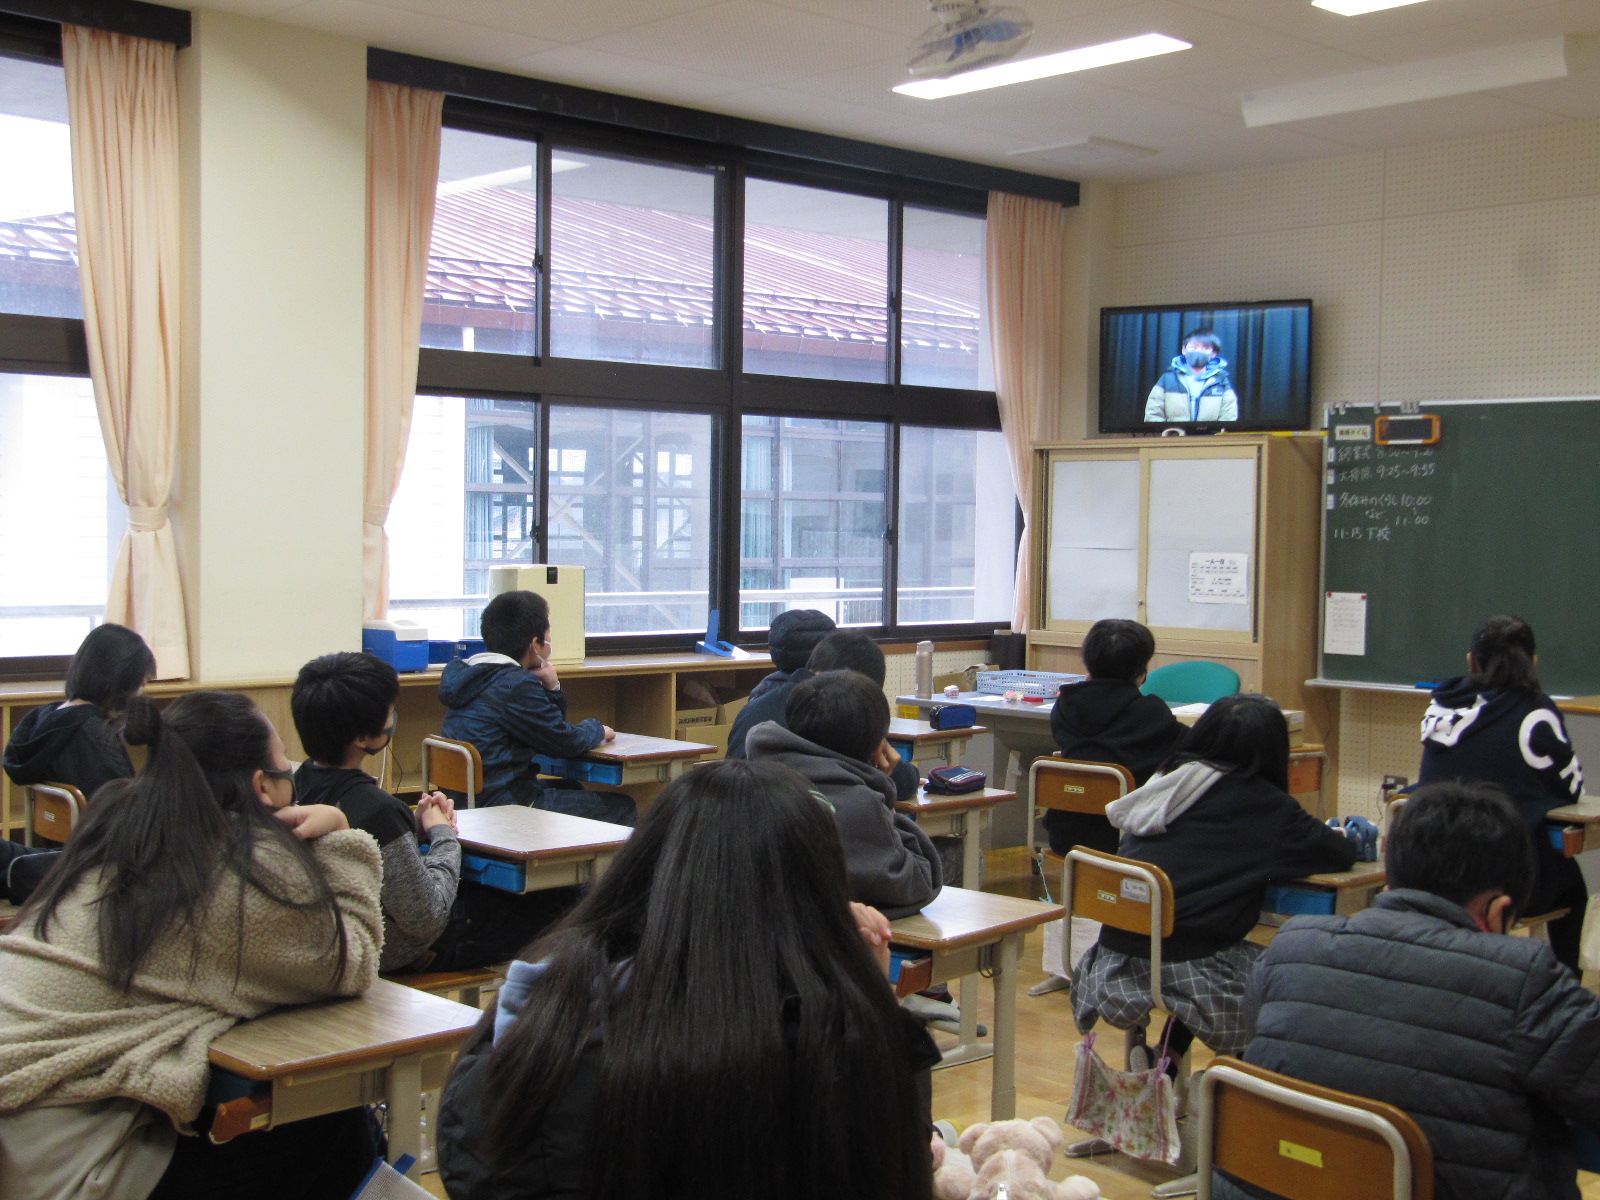 教室でテレビ放送を見る児童たち